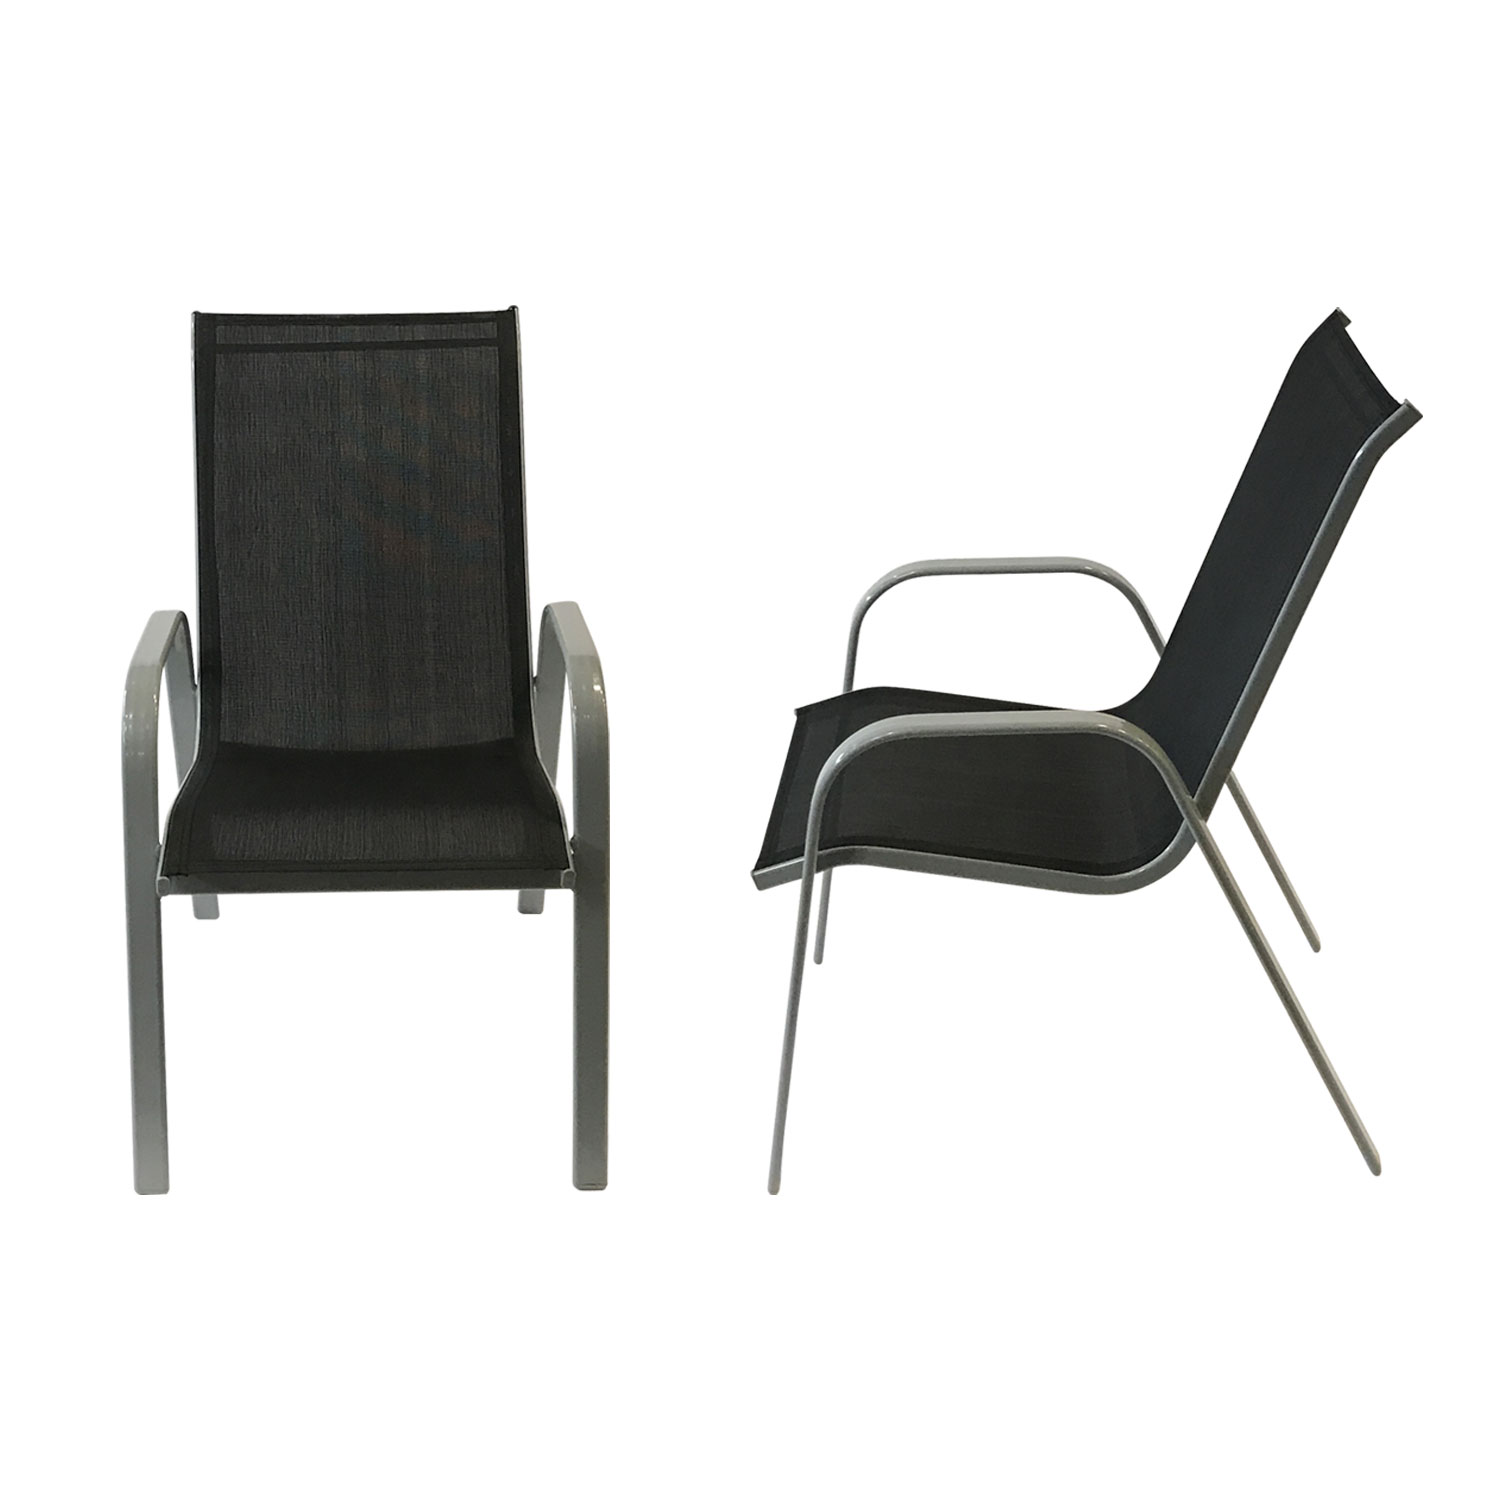 Set van 8 MARBELLA stoelen in zwart textilene - grijs aluminium